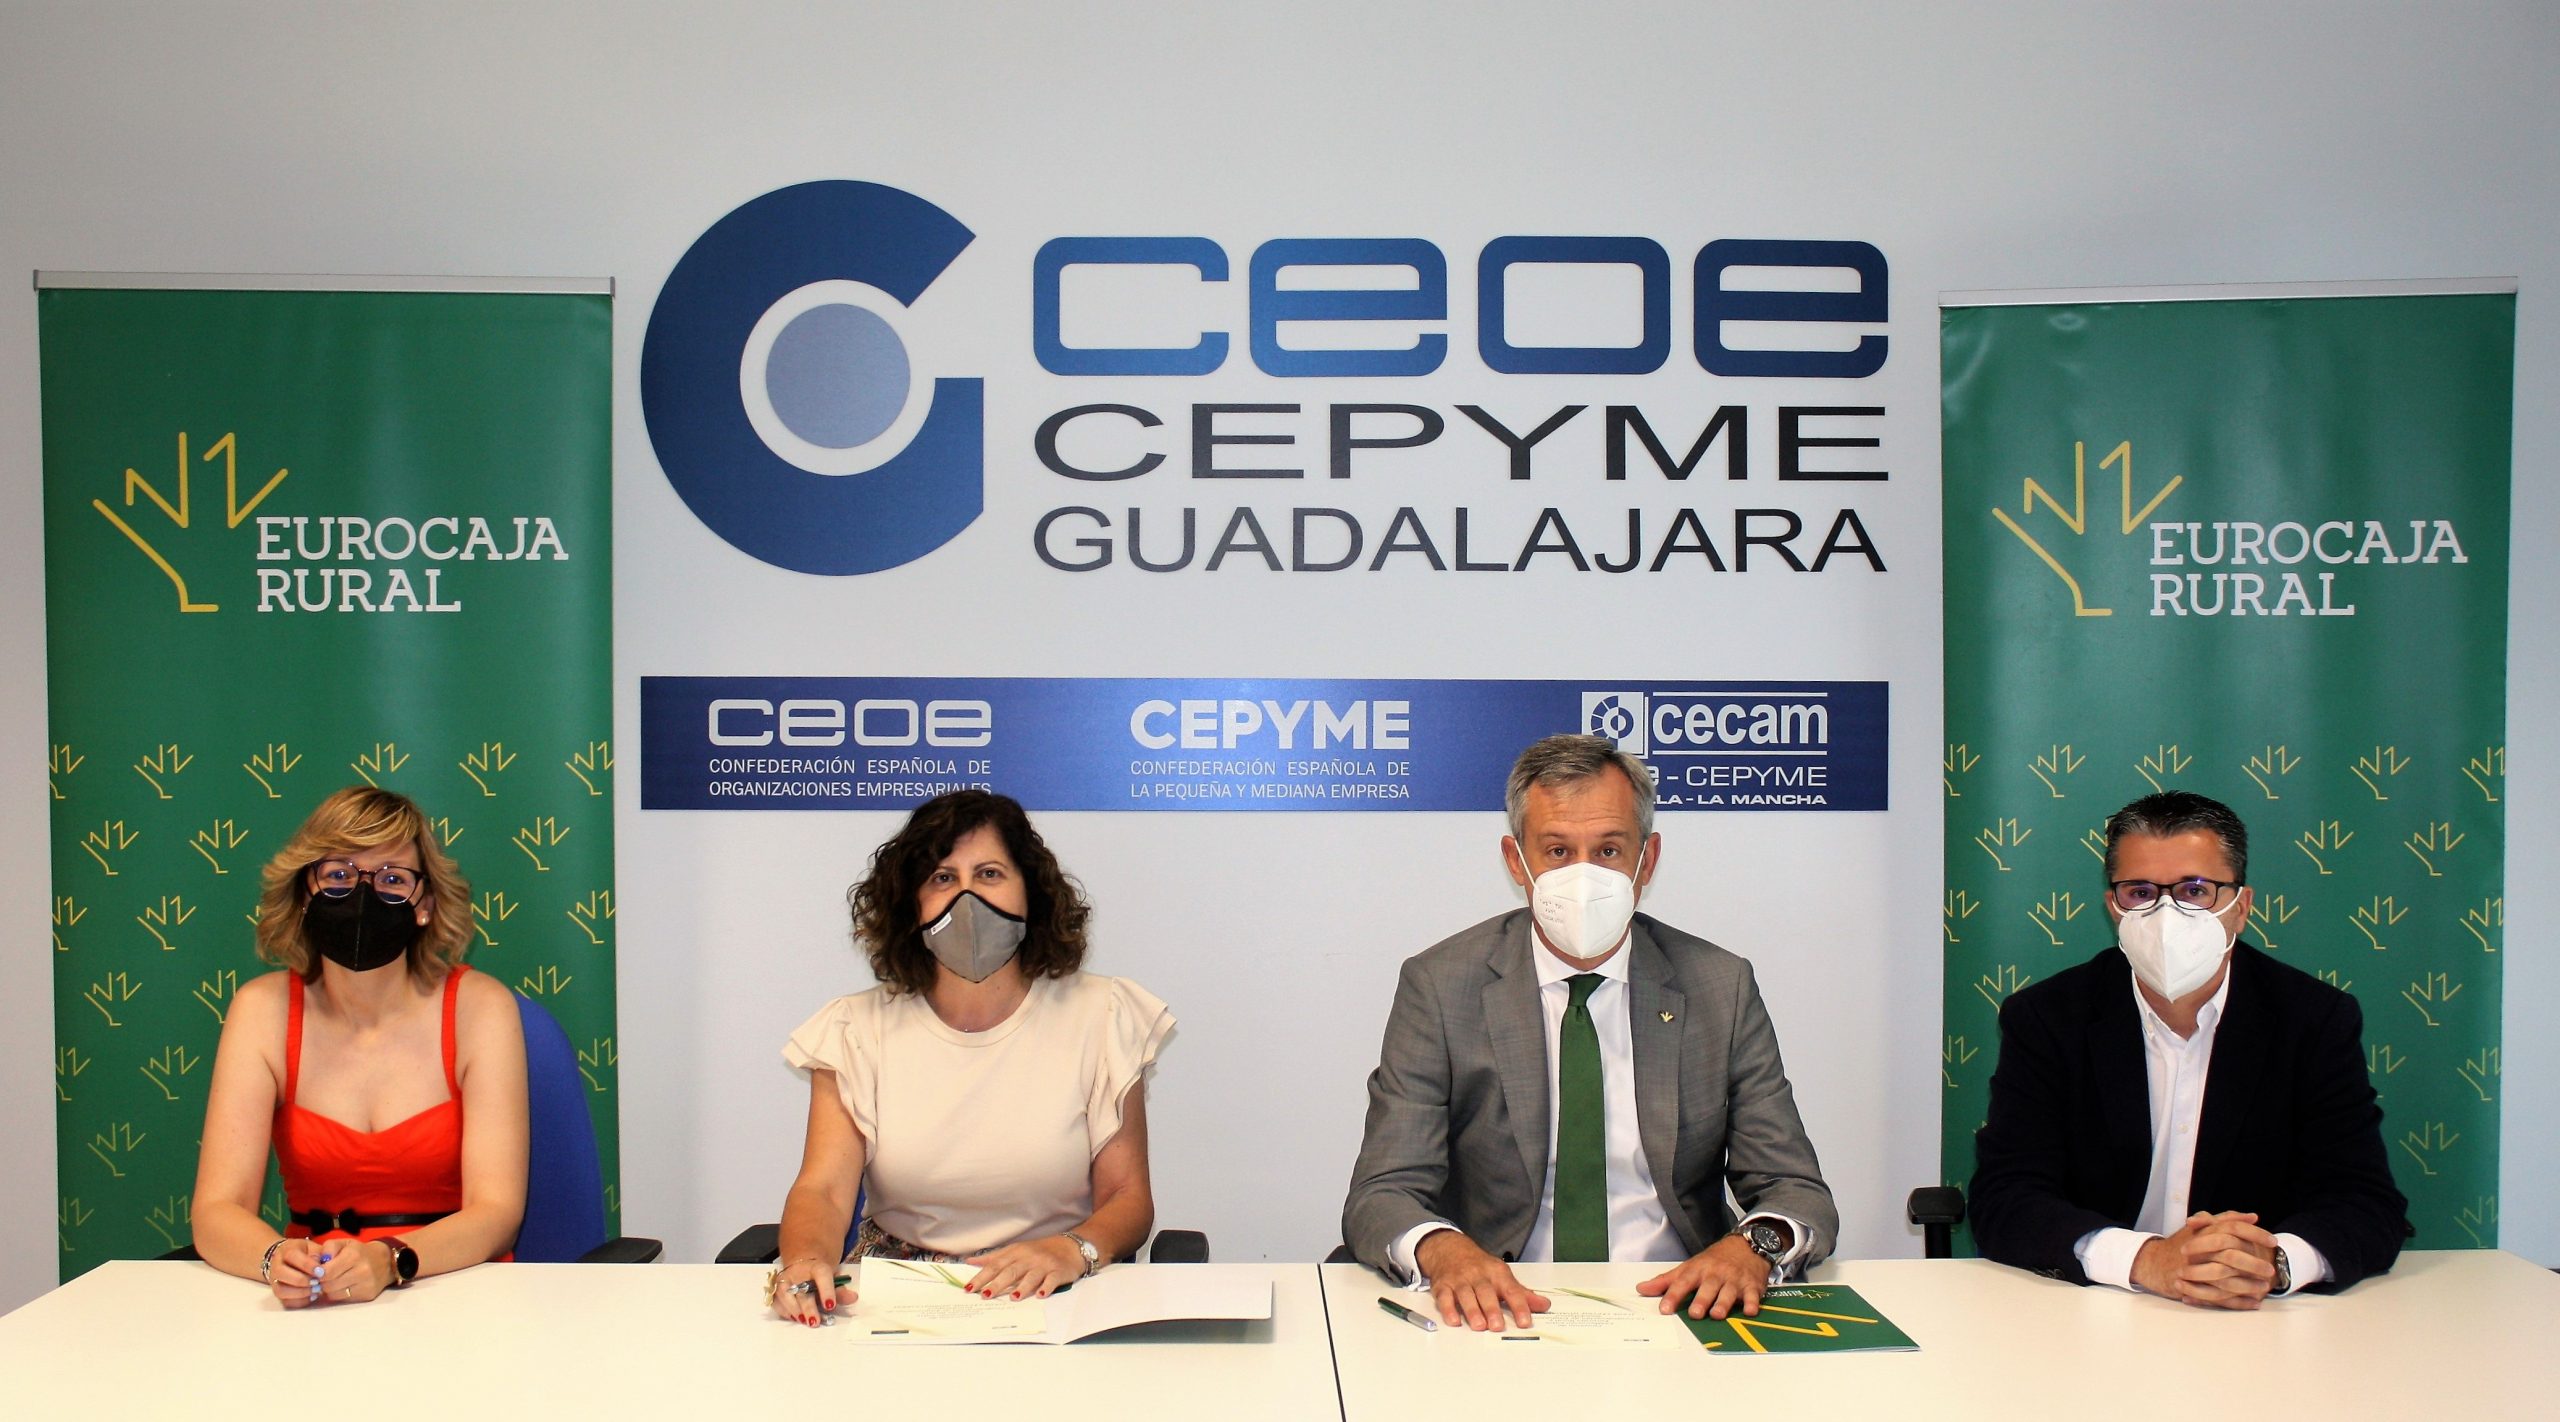 Renovación del convenio de colaboración entre Eurocaja Rural y CEOE Guadalajara.